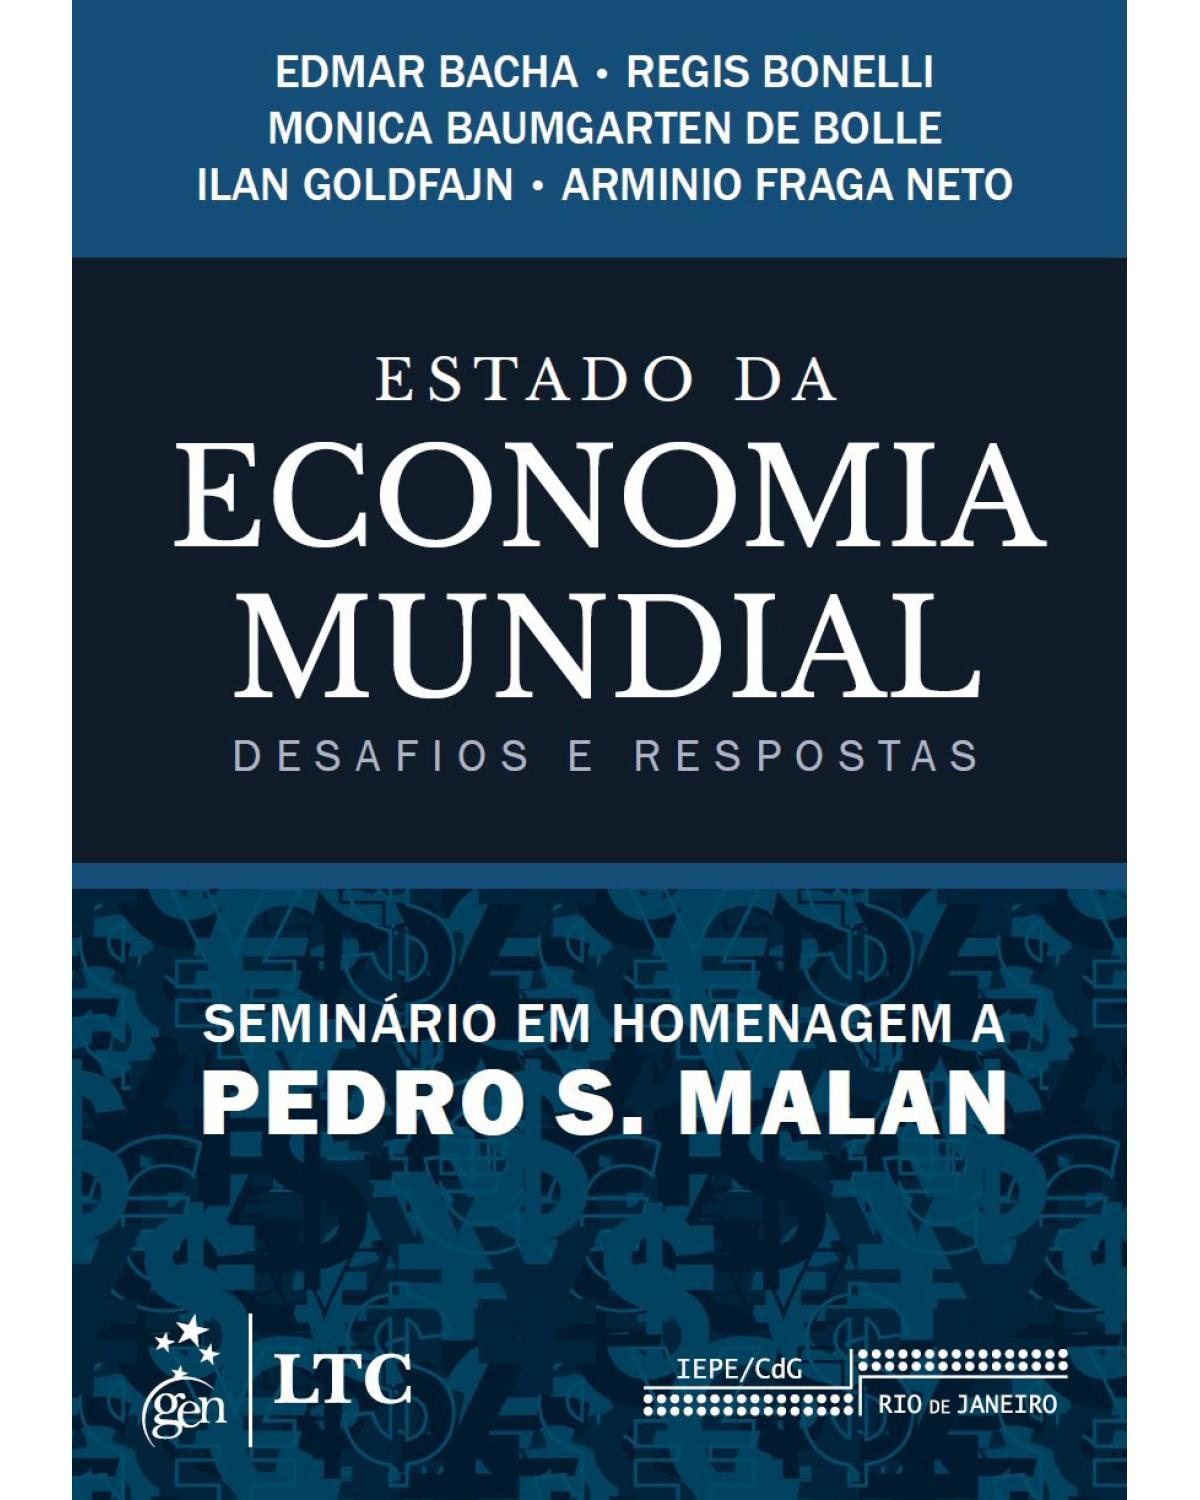 Estado da economia mundial - Desafios e respostas - Seminário em homenagem a Pedro S. Malan - 1ª Edição | 2015